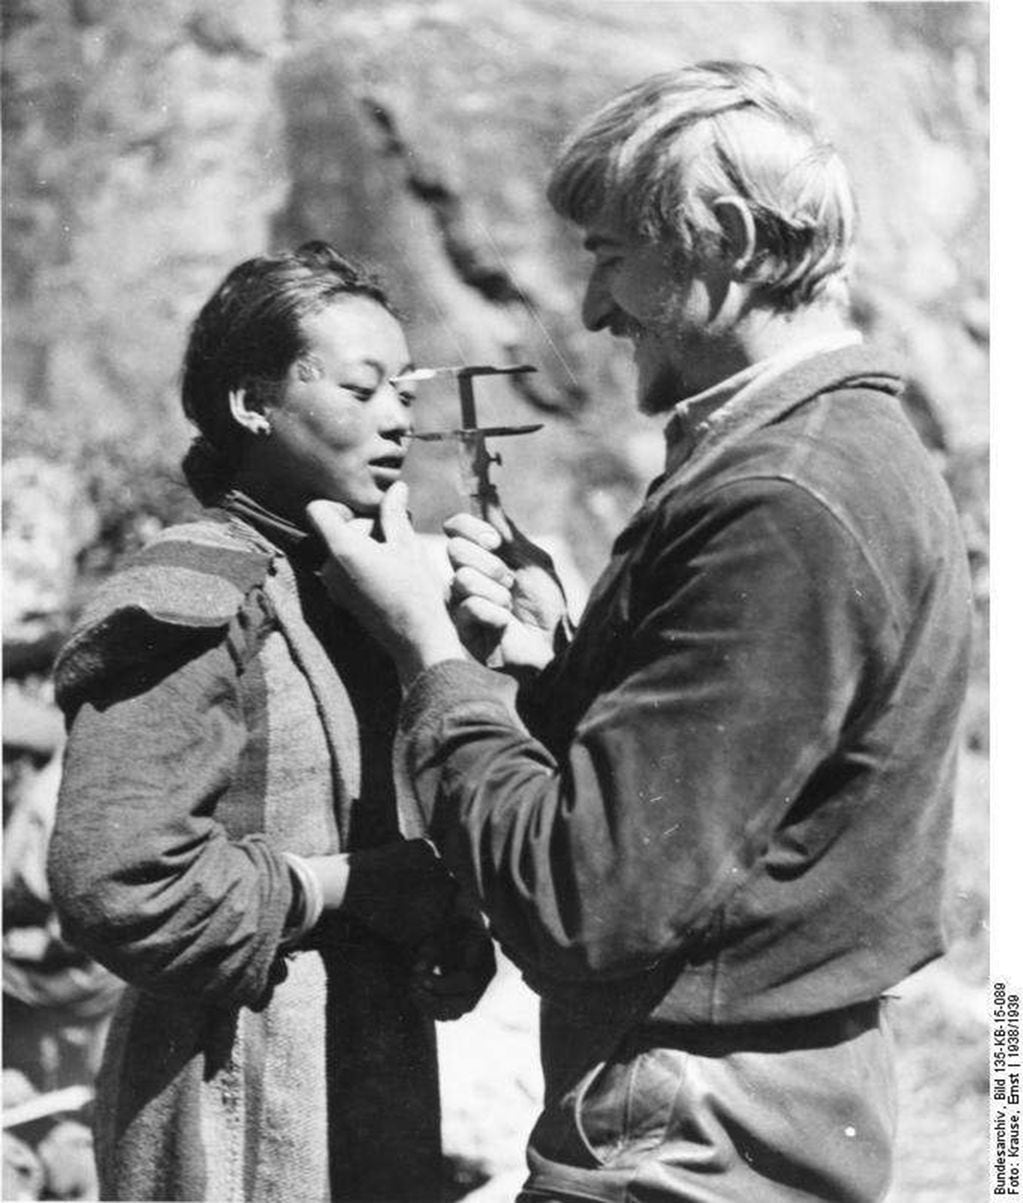 Algunas teorías racistas sostenían que en el Tíbet estaba el origen del pueblo ario. Himmler envió entonces al joven Otto Rahn al frente de una expedición, en busca de objetos míticos que probaran la superioridad racial alemana.